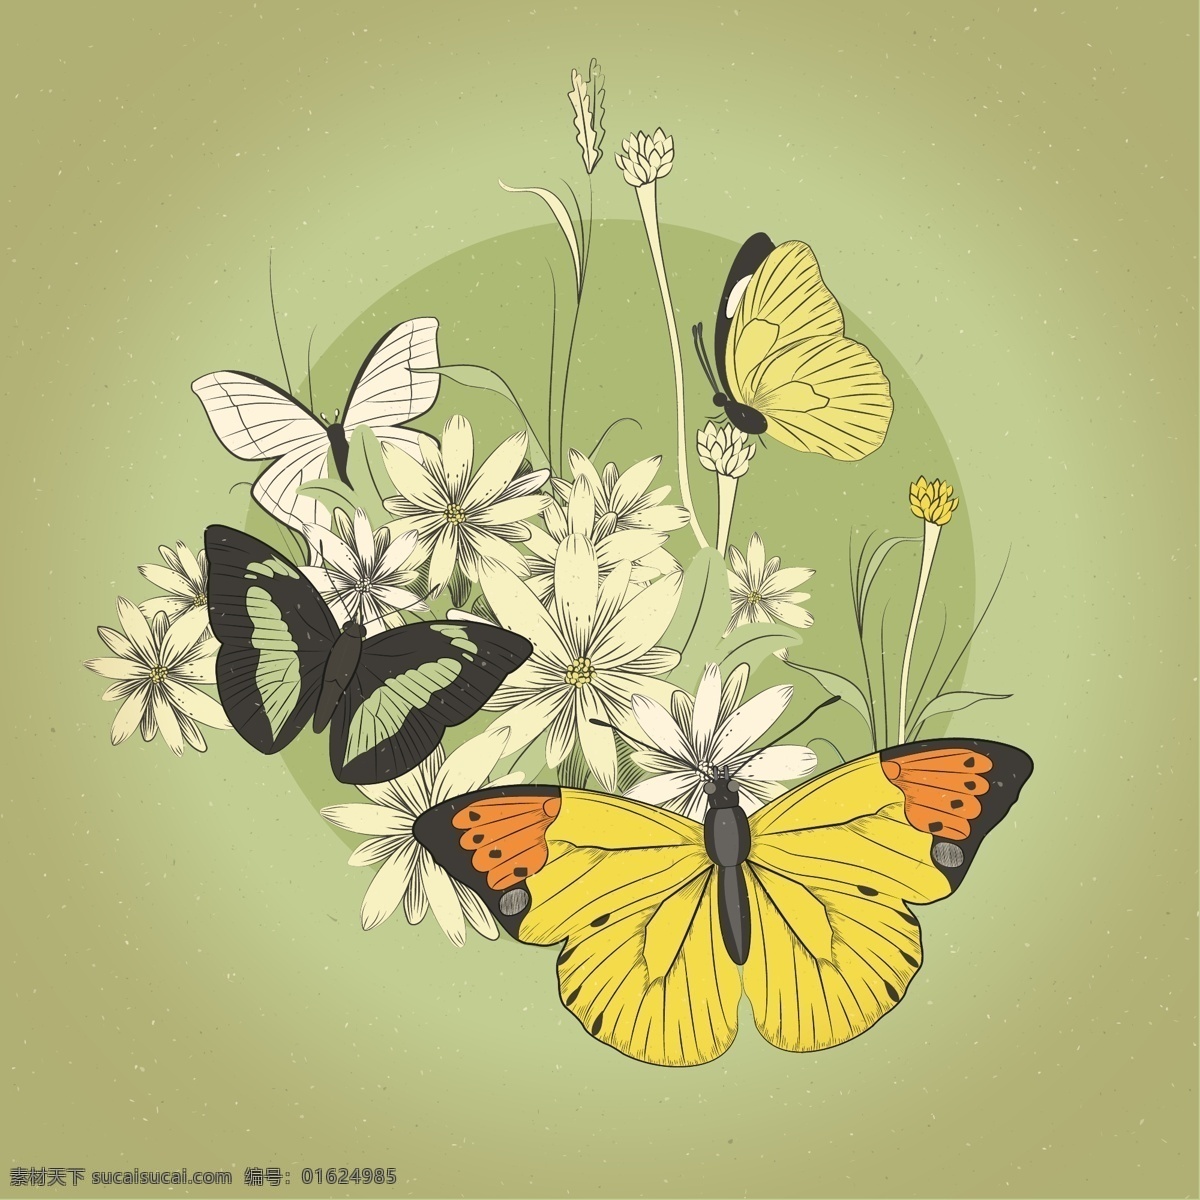 复古 蝴蝶 花卉 矢量 昆虫 植物 彩绘 底纹边框 花边花纹